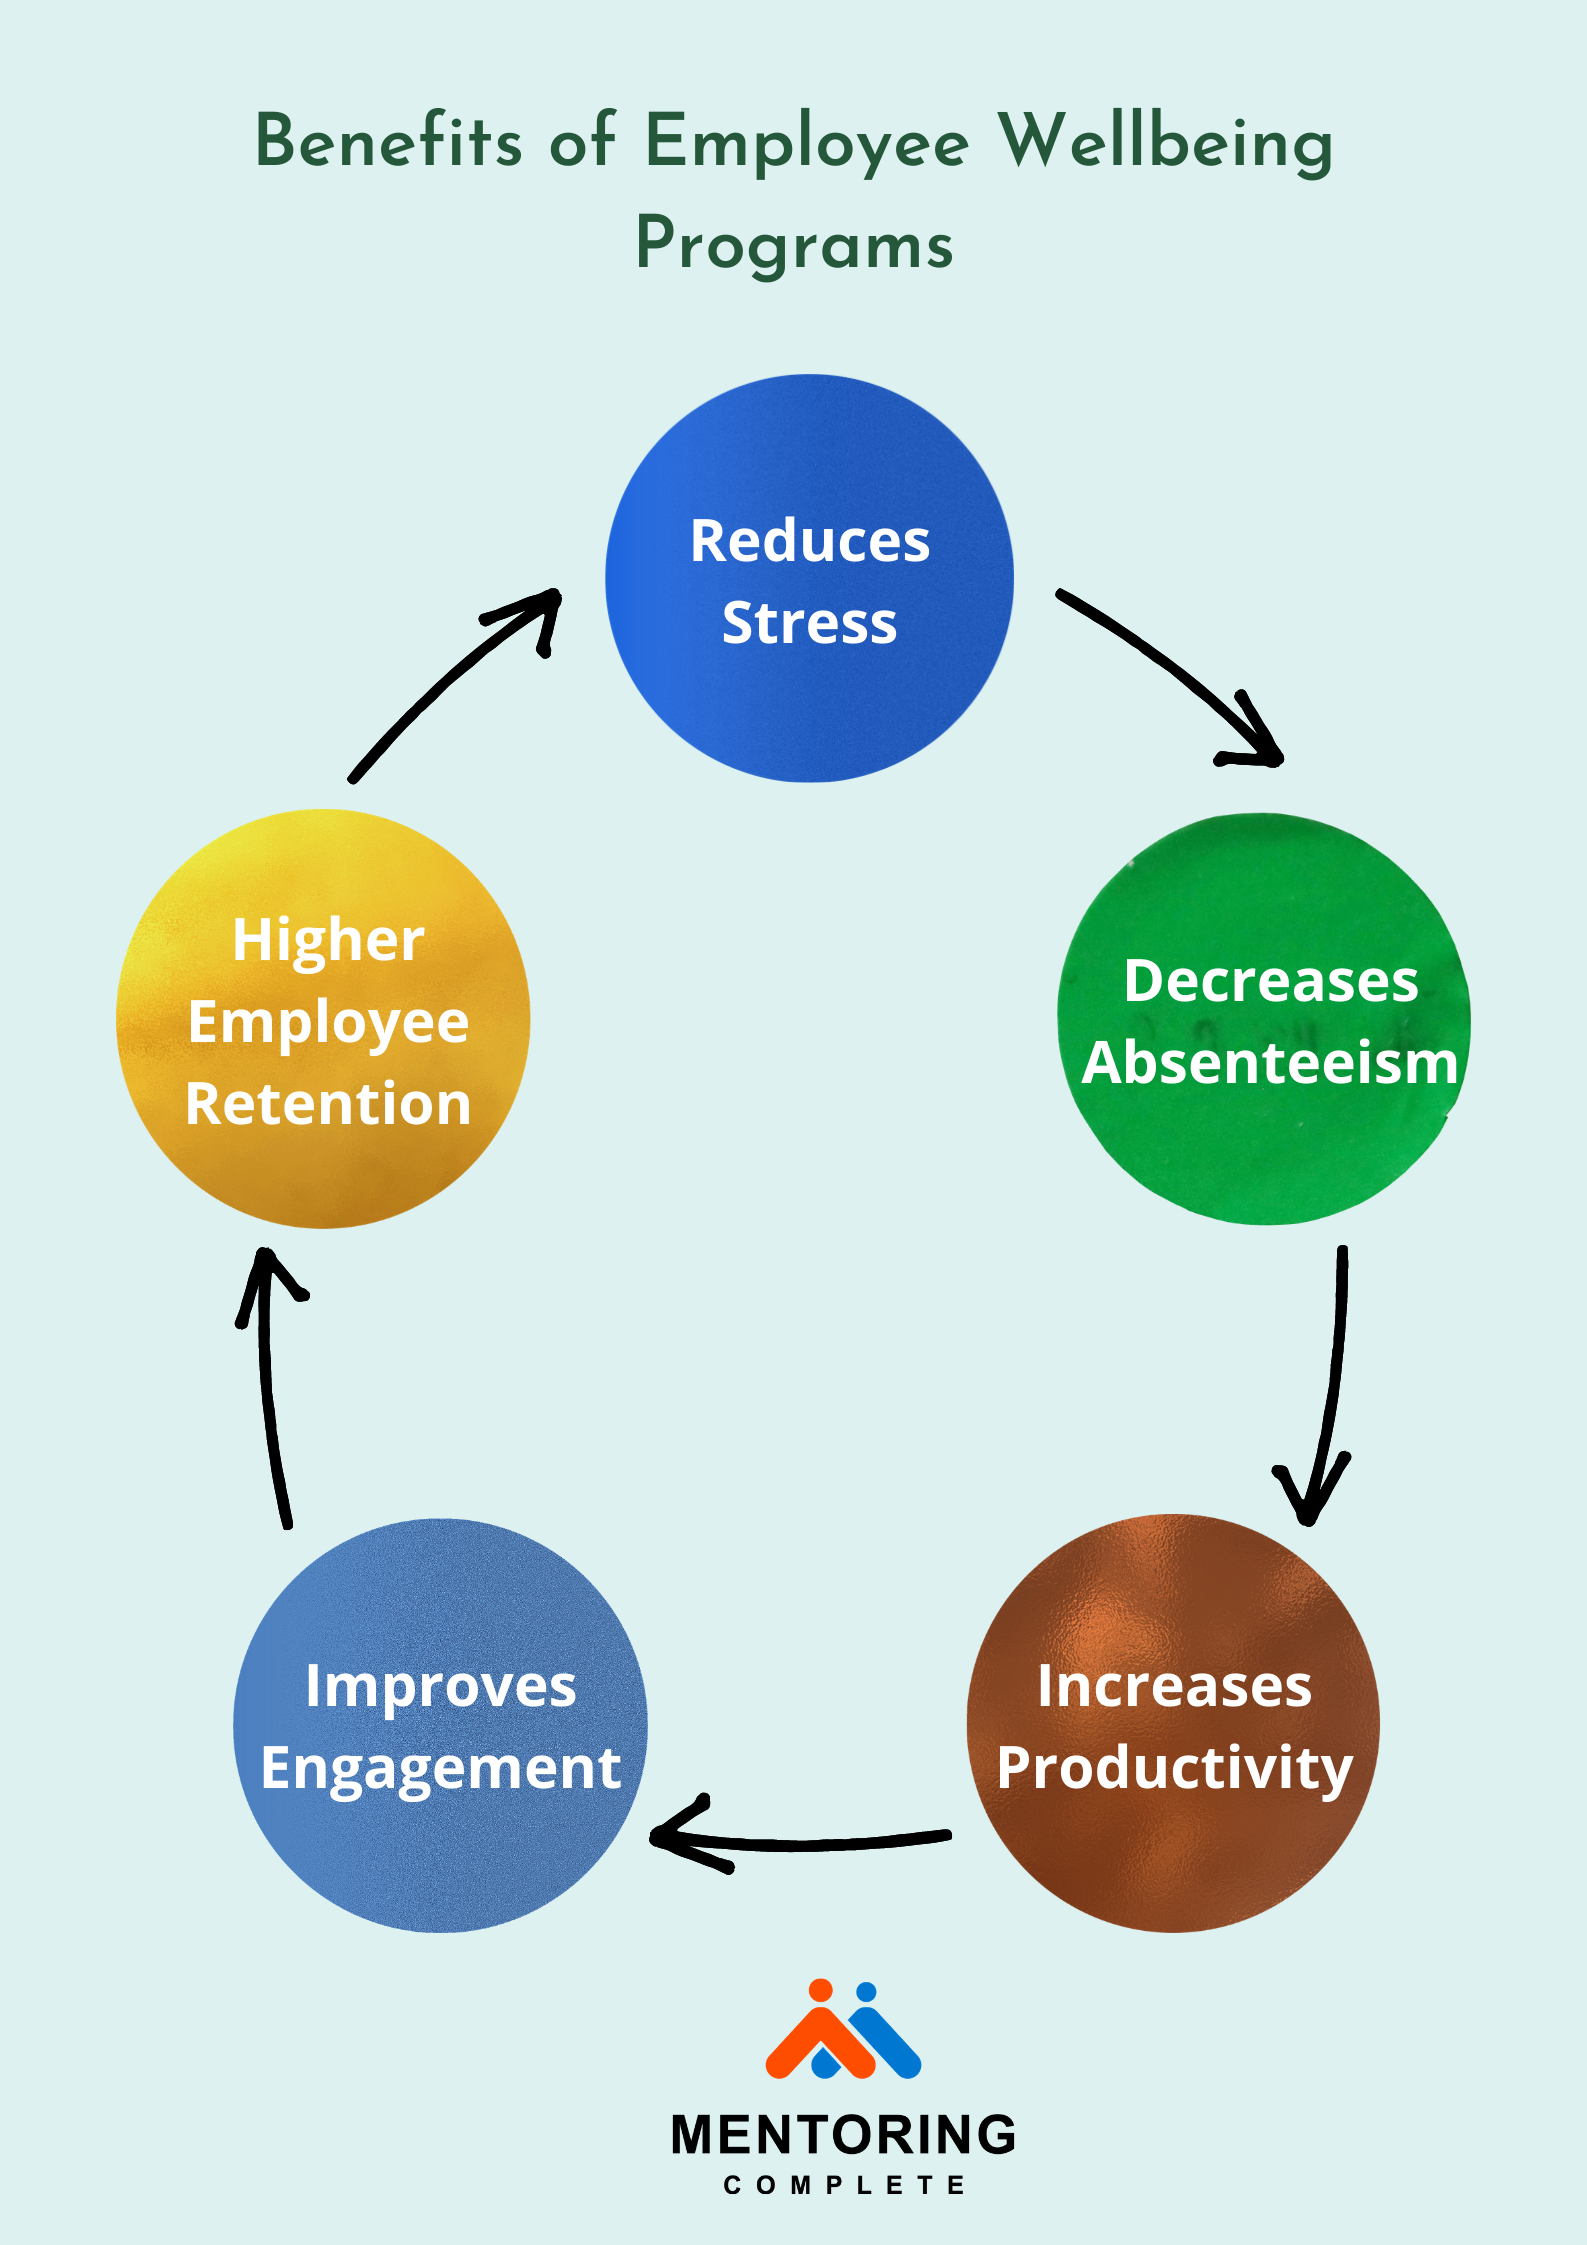 Benefits of Employee Wellbeing program